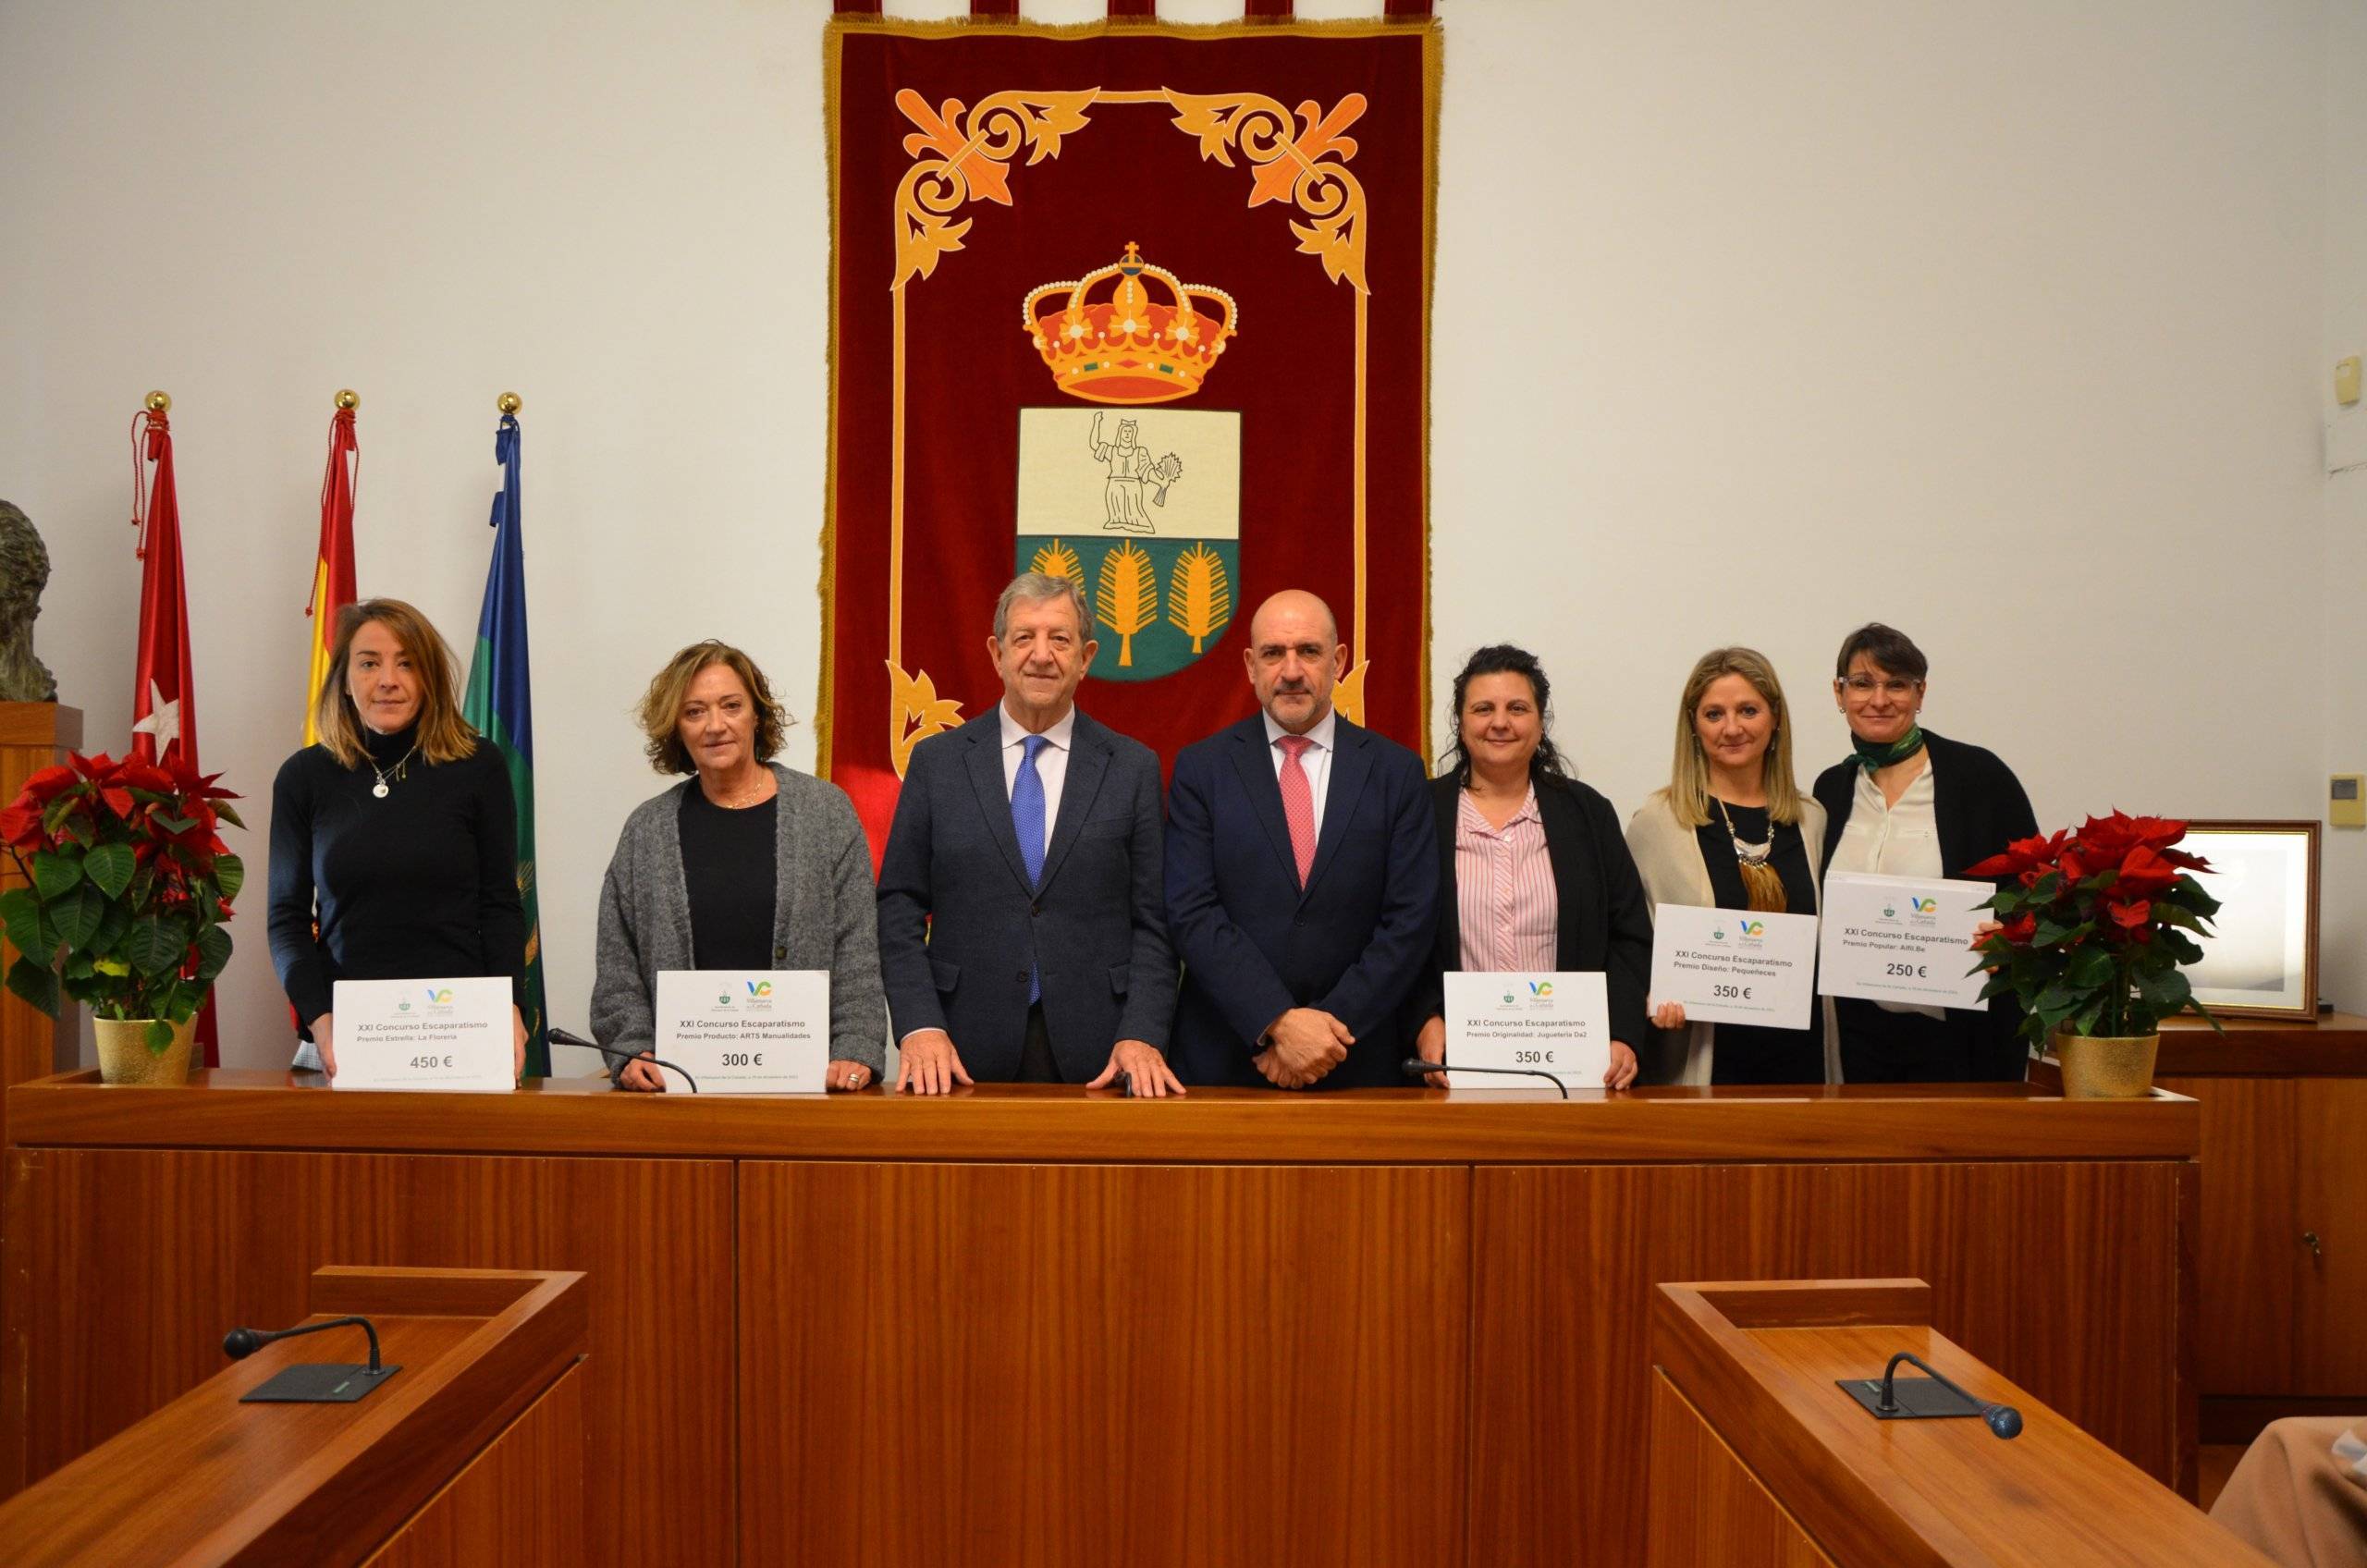 El alcalde y el concejal de Actividades Empresariales junto a los ganadores del XXI Concurso de Escaparatismo.